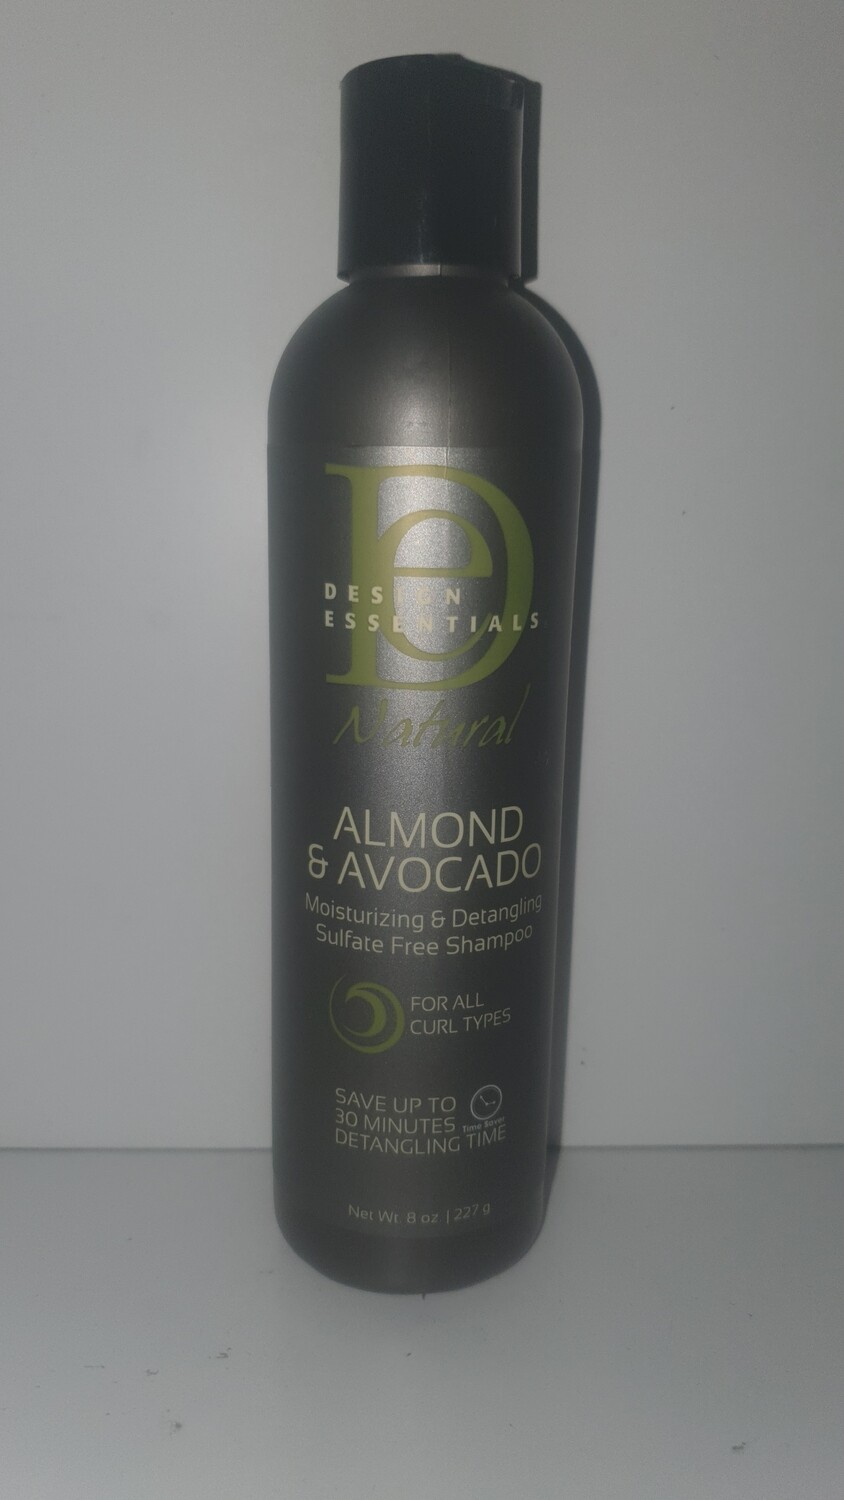 DESIGN ESSENTIAL - Almond & Avocado - Moisturizing & Detangling Sulfate Free Shampoo